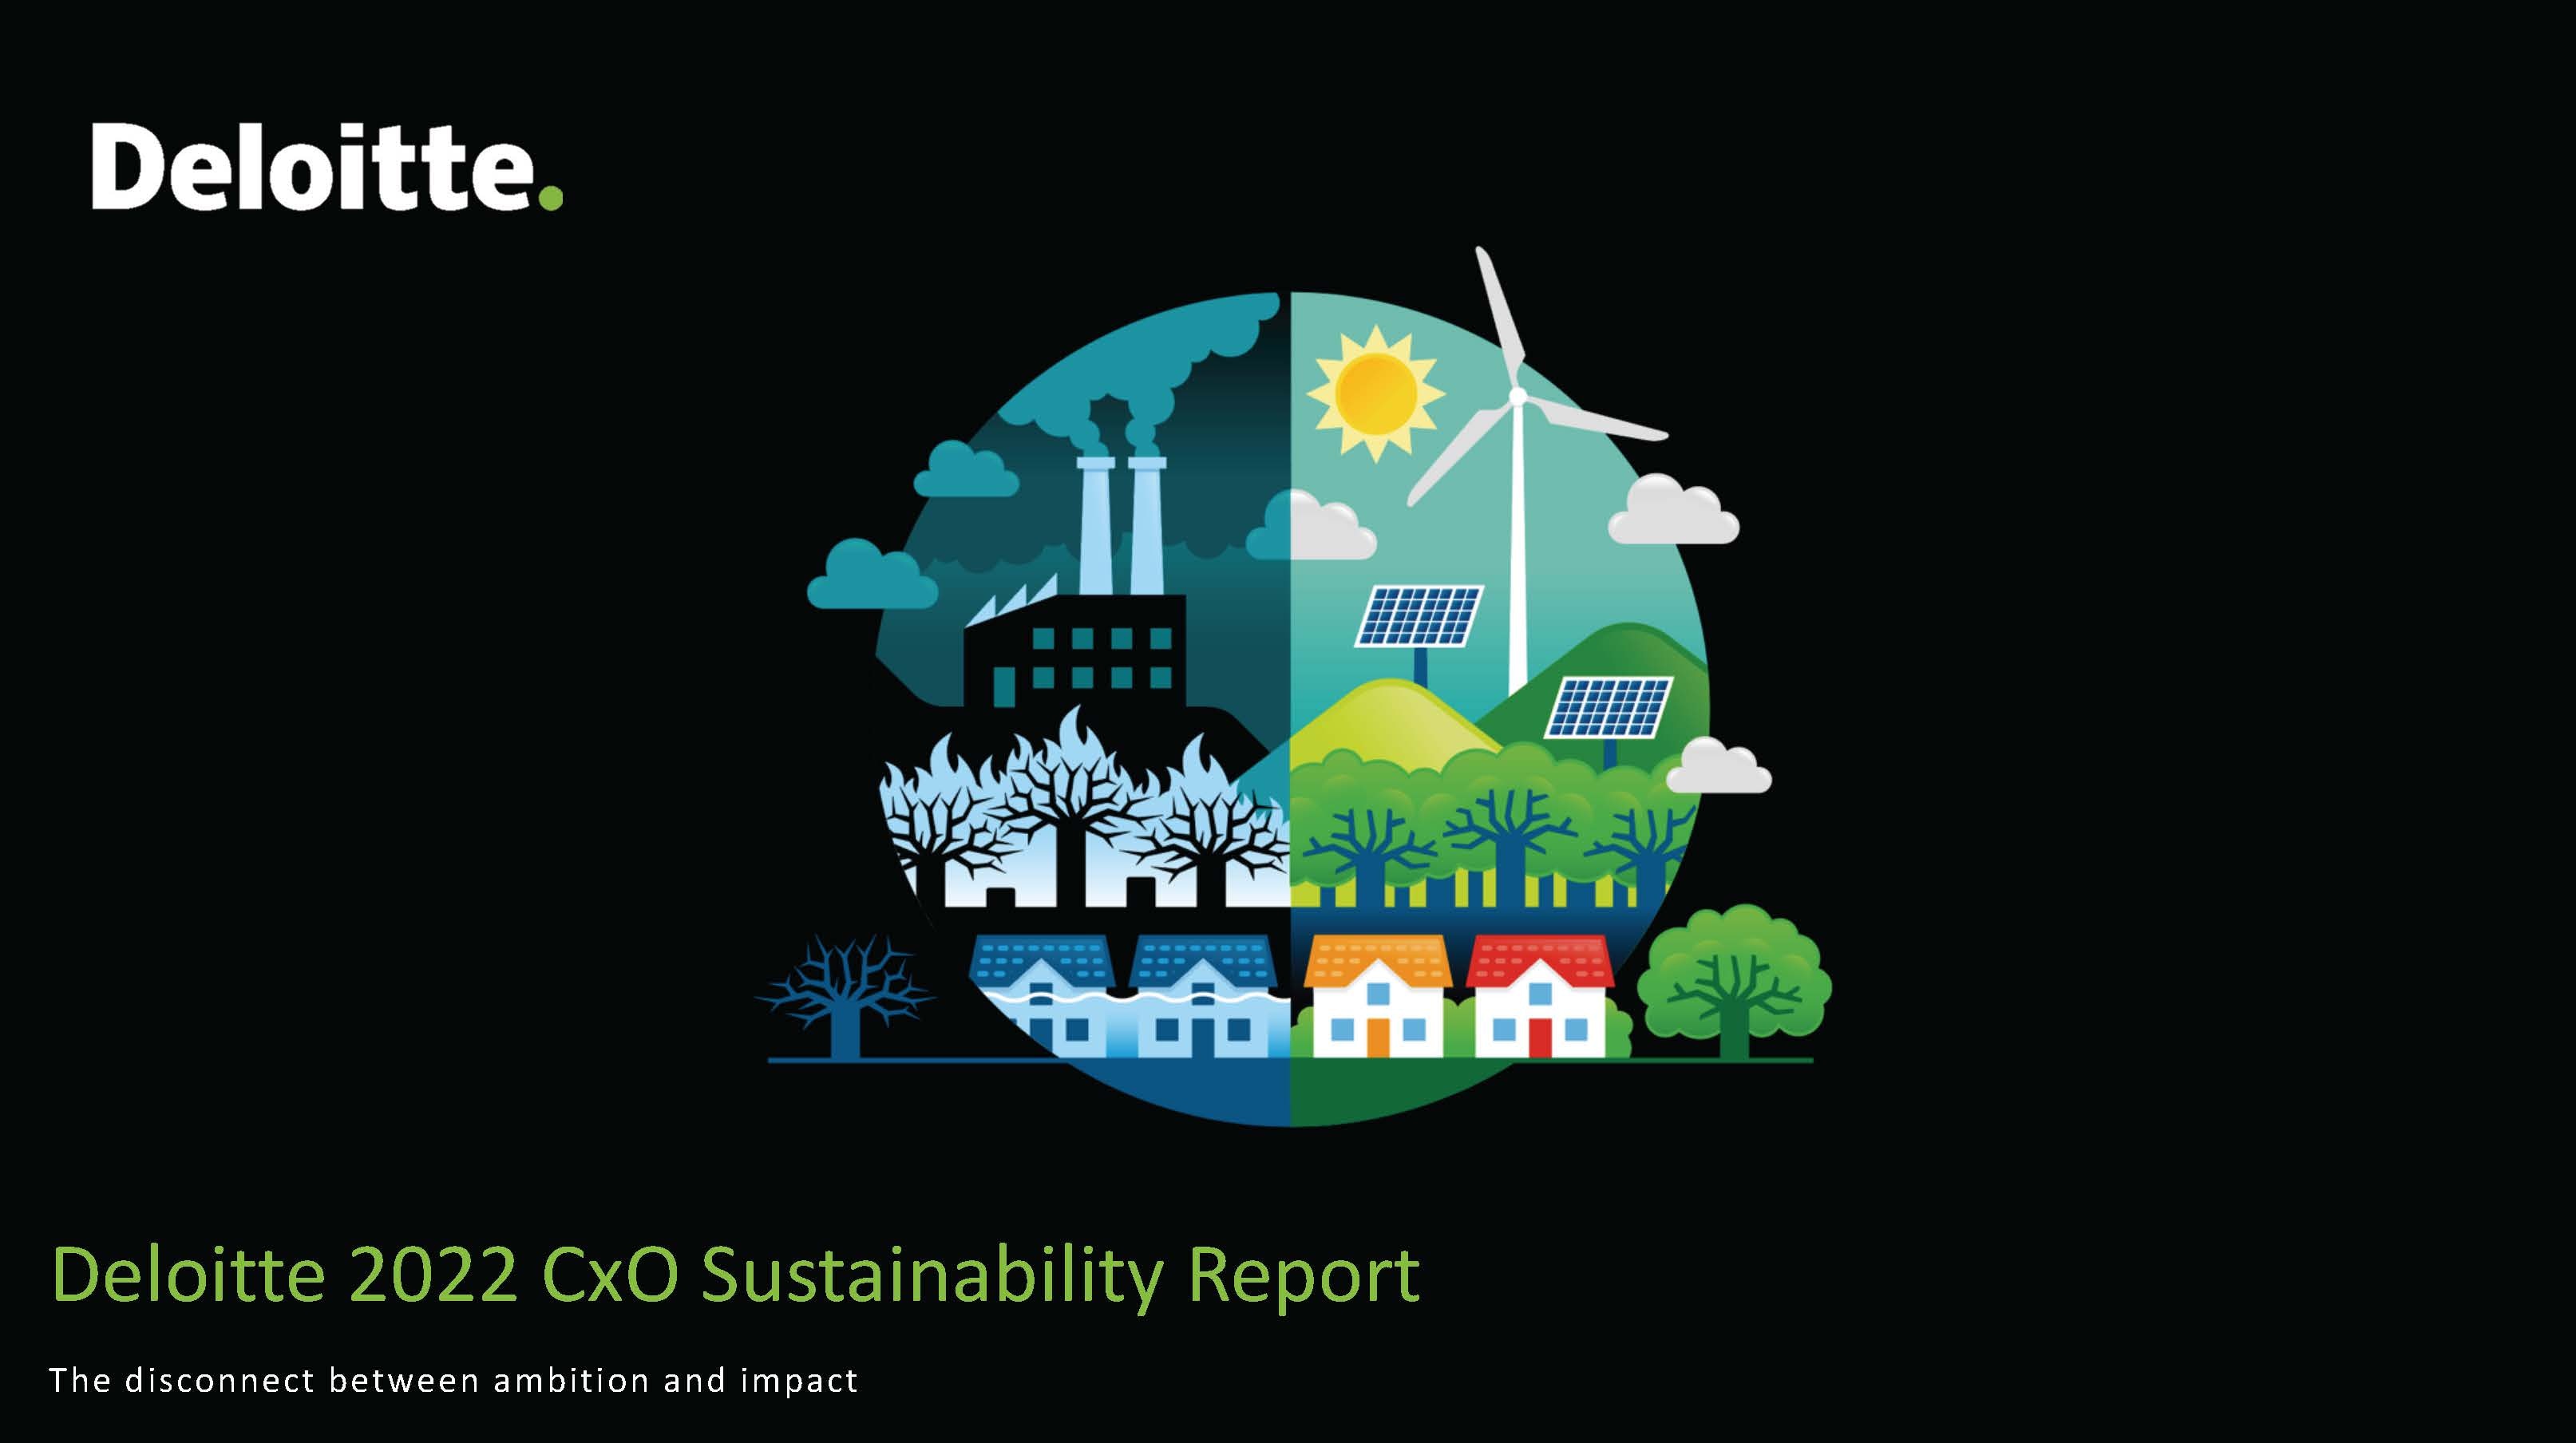 2022 CxO Sustainability Report Deloitte Finland